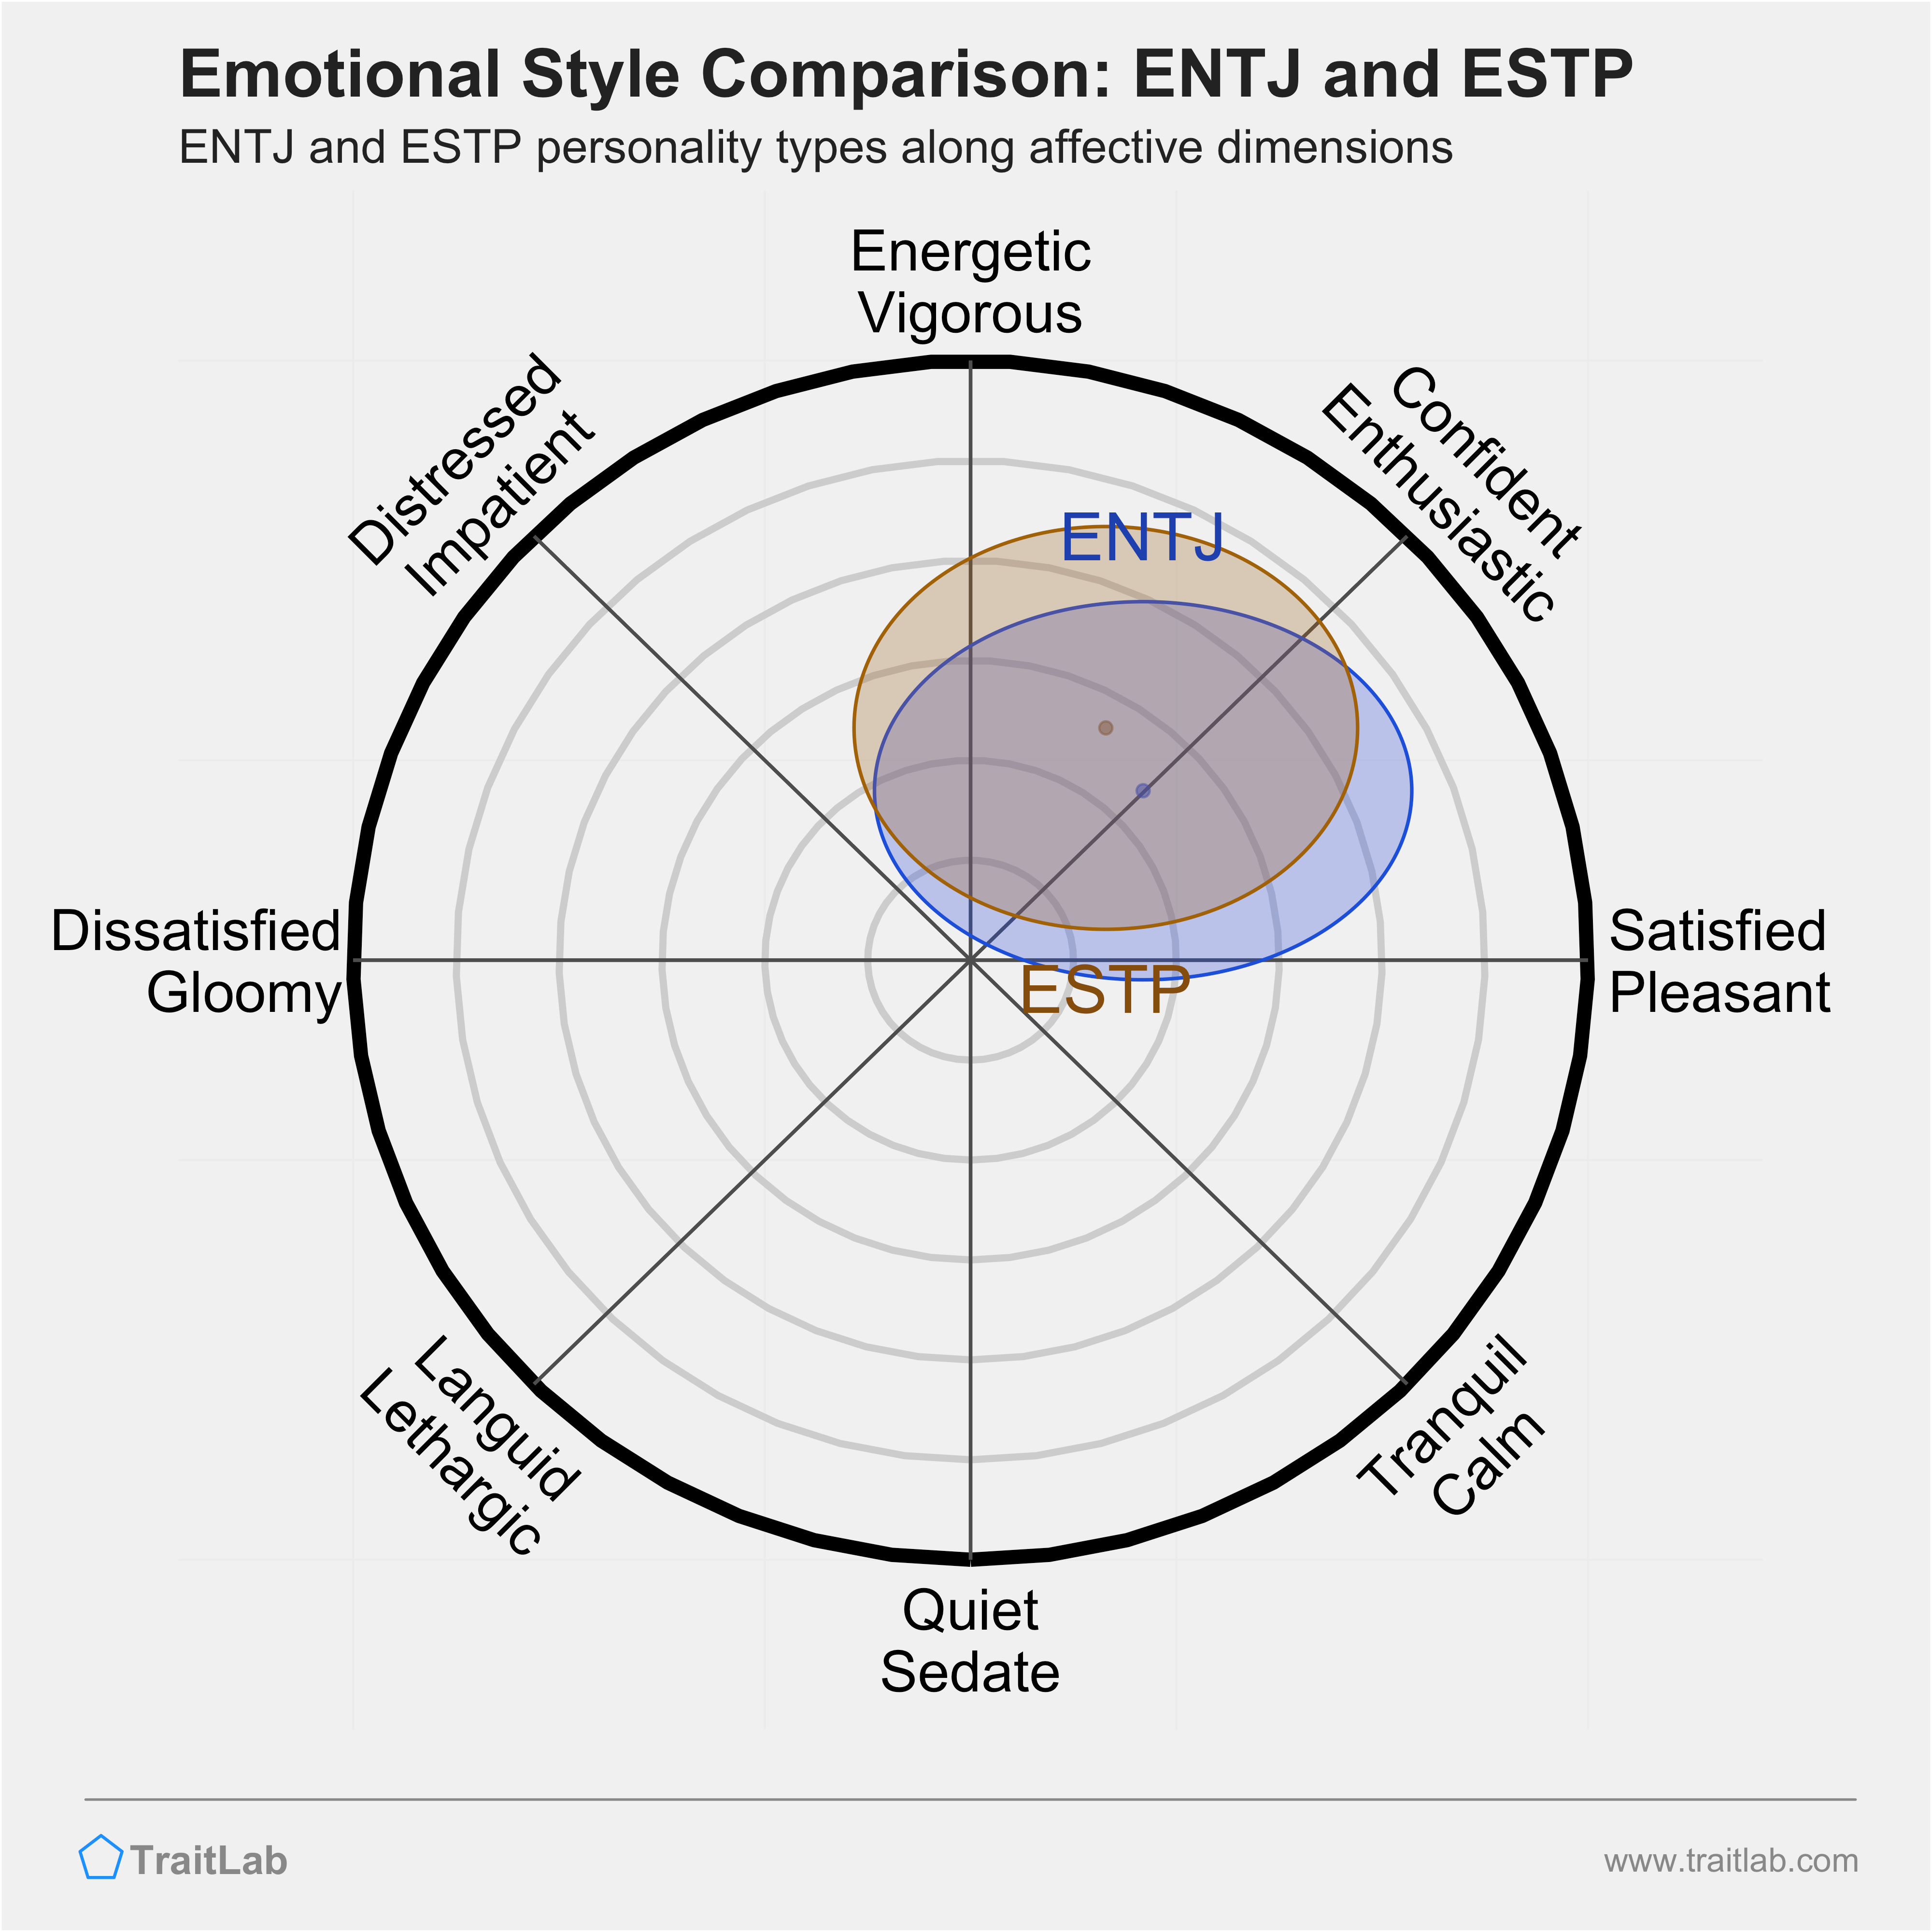 ENTJ and ESTP comparison across emotional (affective) dimensions